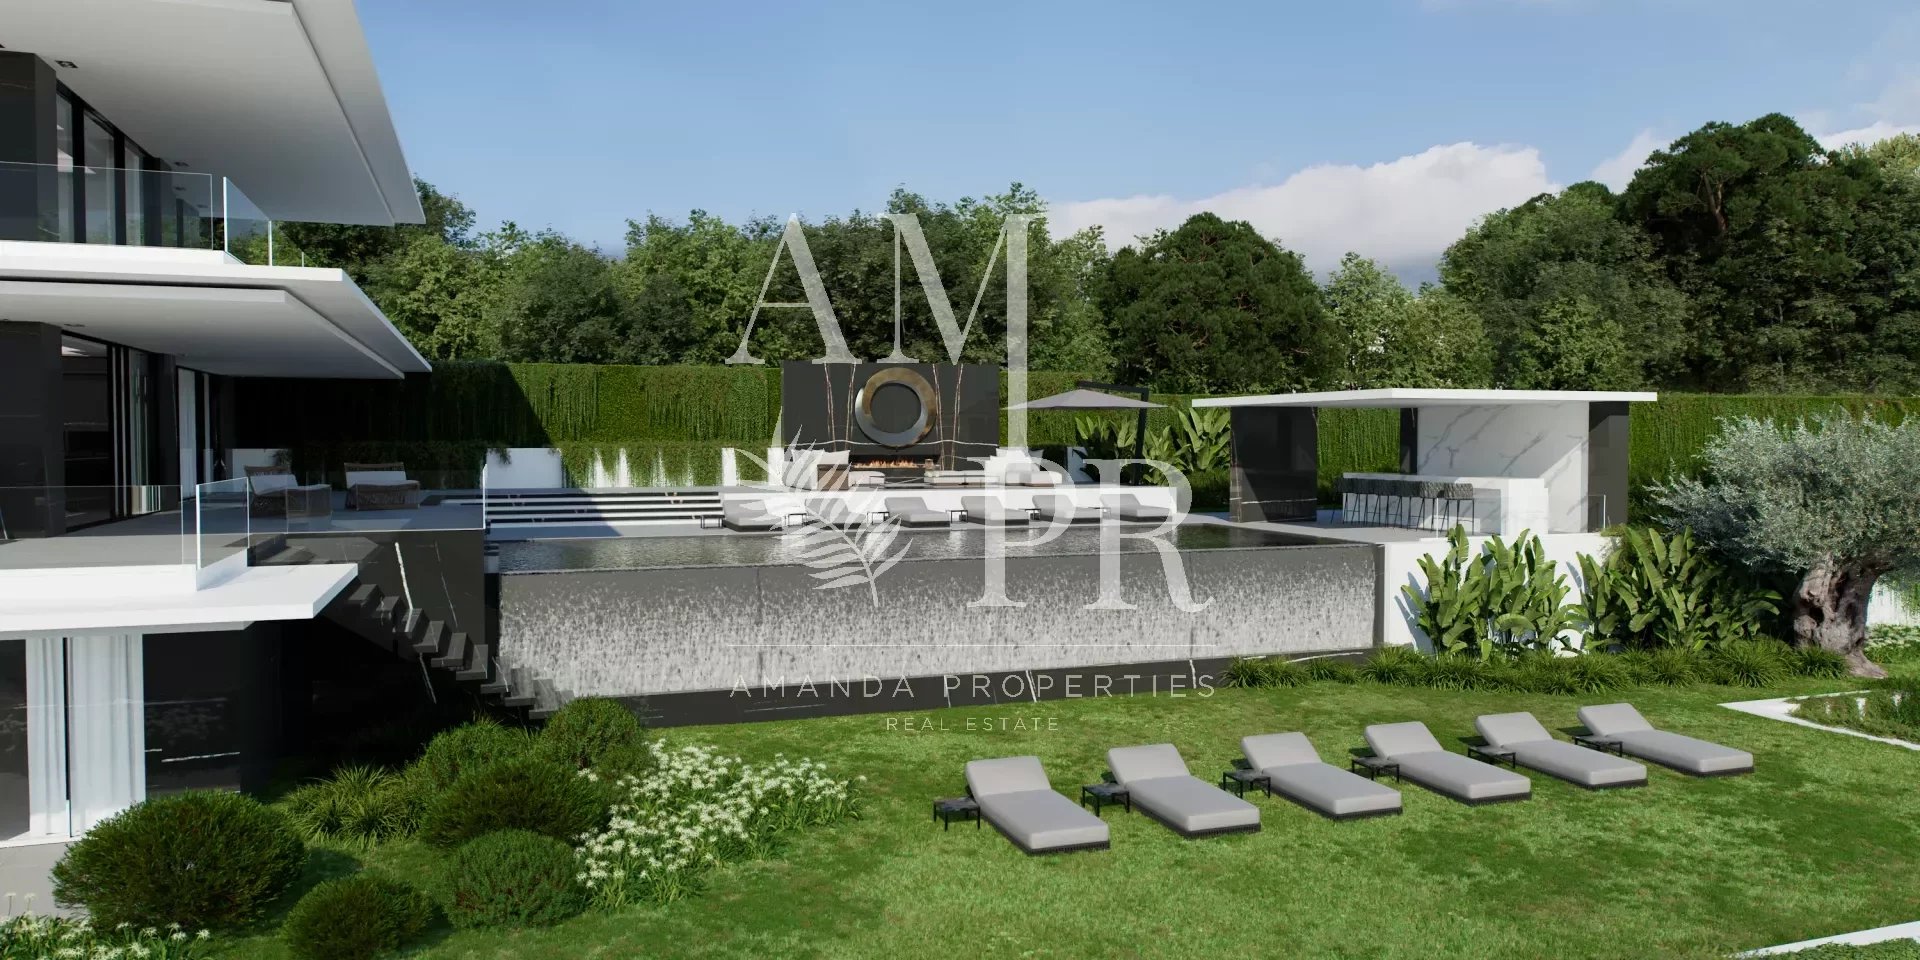 Le Cannet: villa contemporaine neuve avec piscine